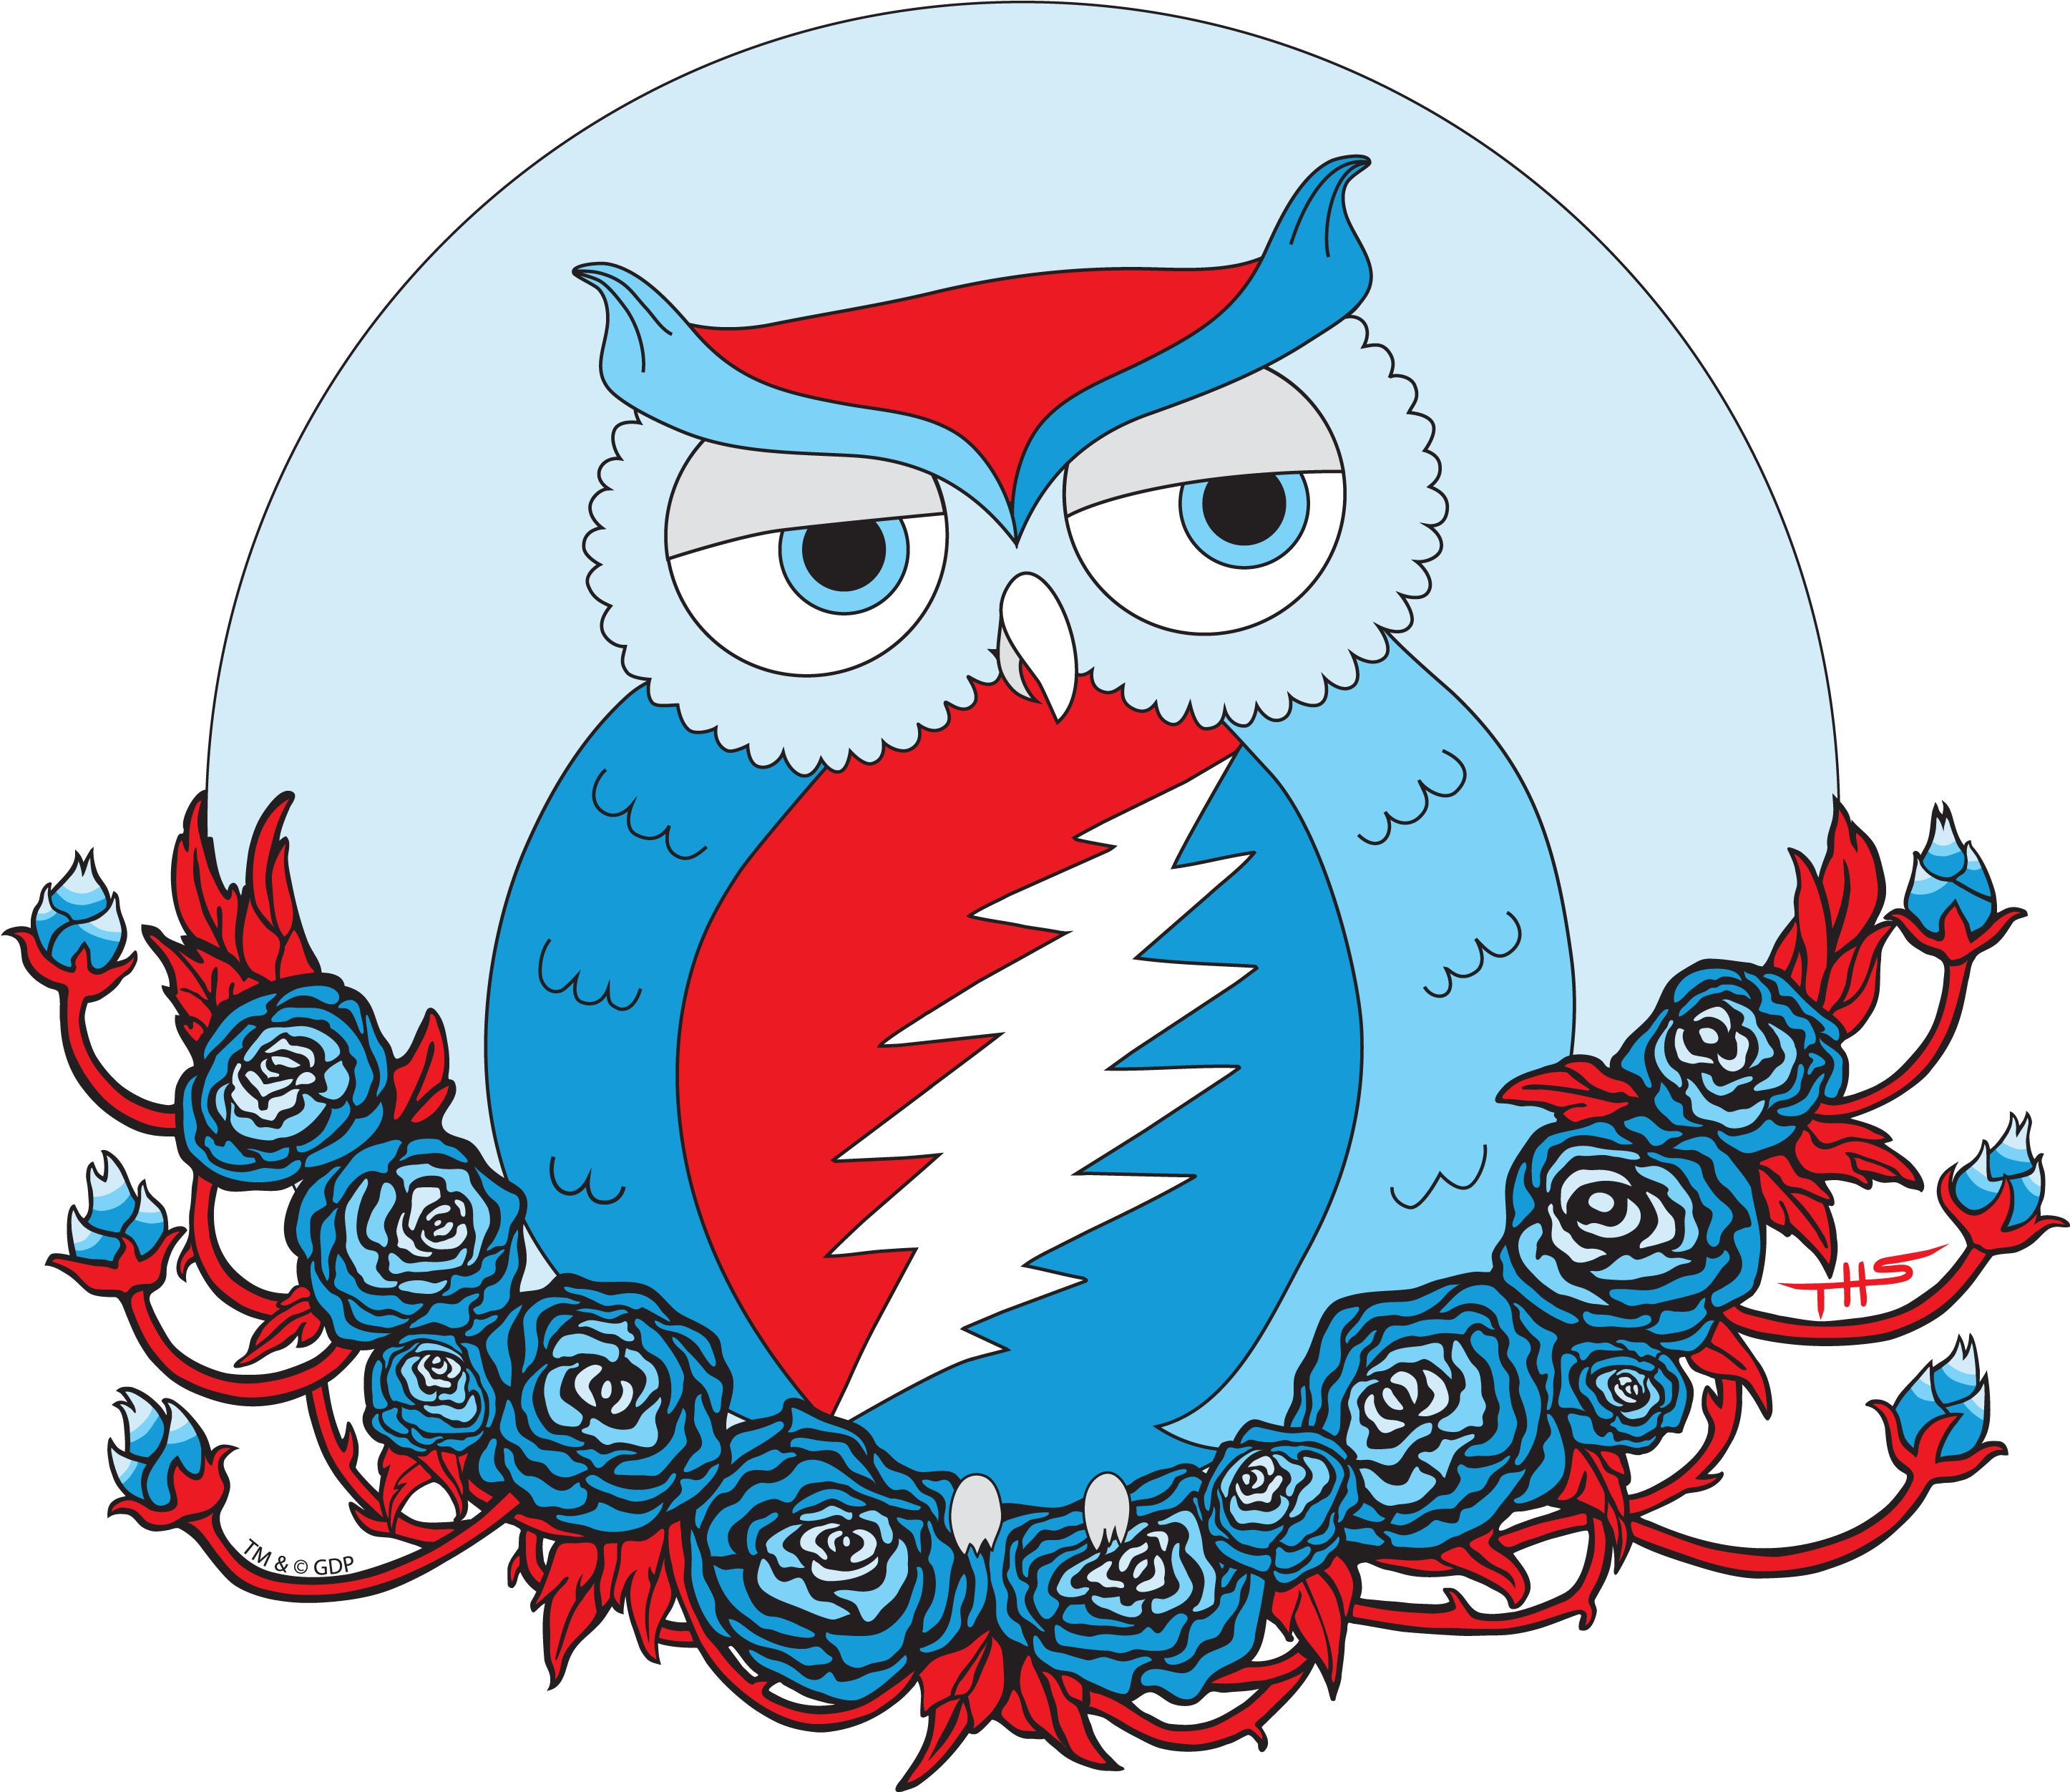 Owl Grateful Dead Shirt (2892x2892)